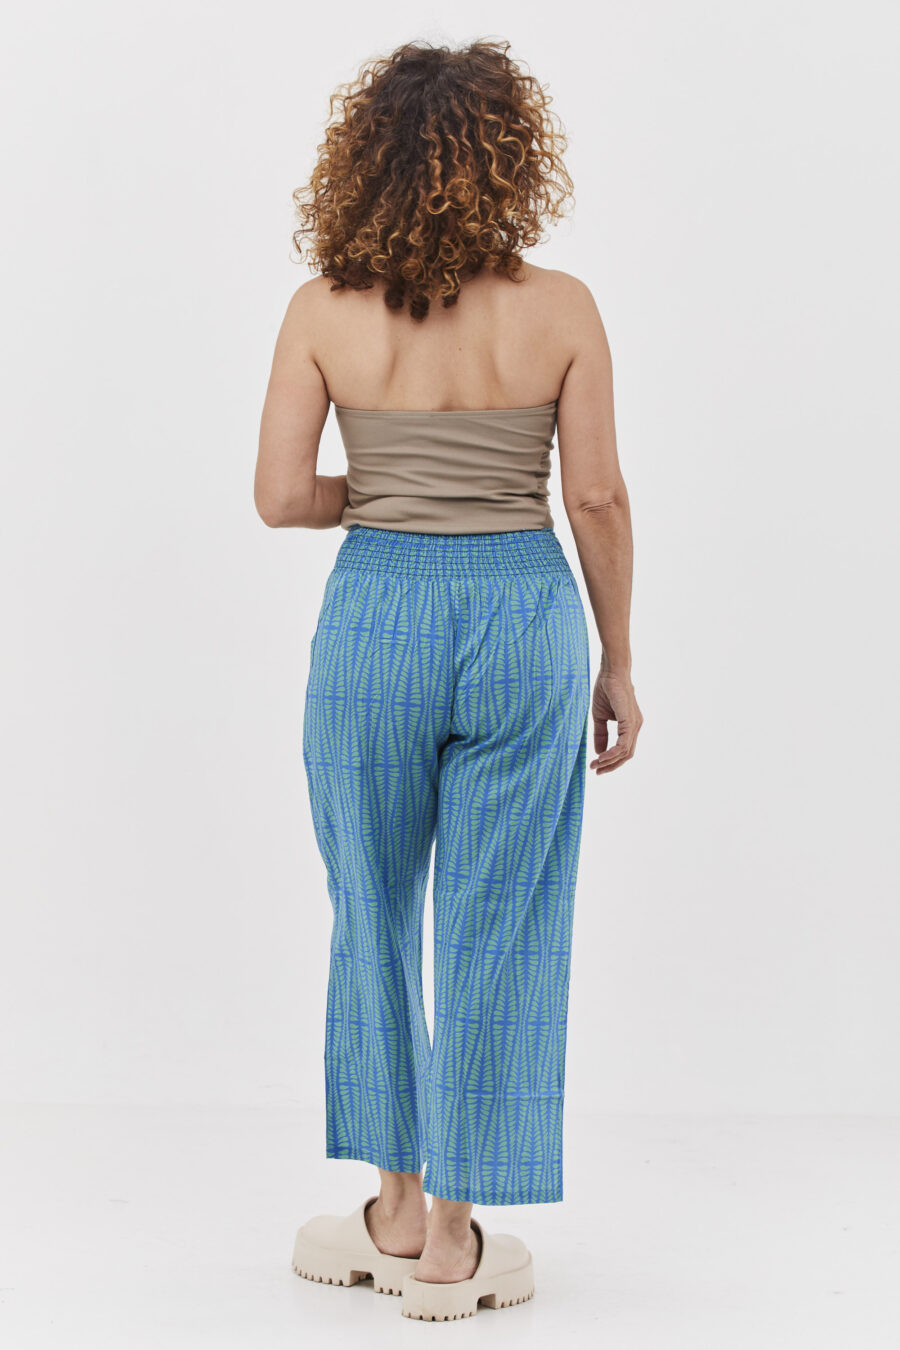 מכנסי ג'ד | מכנסיים מעוצבים ונוחים של קומפורט זון בוטיק - הדפס אגם כחול, מכנסיים כחולים עם הדפס גיאומטרי בצבע ירוק בהיר.